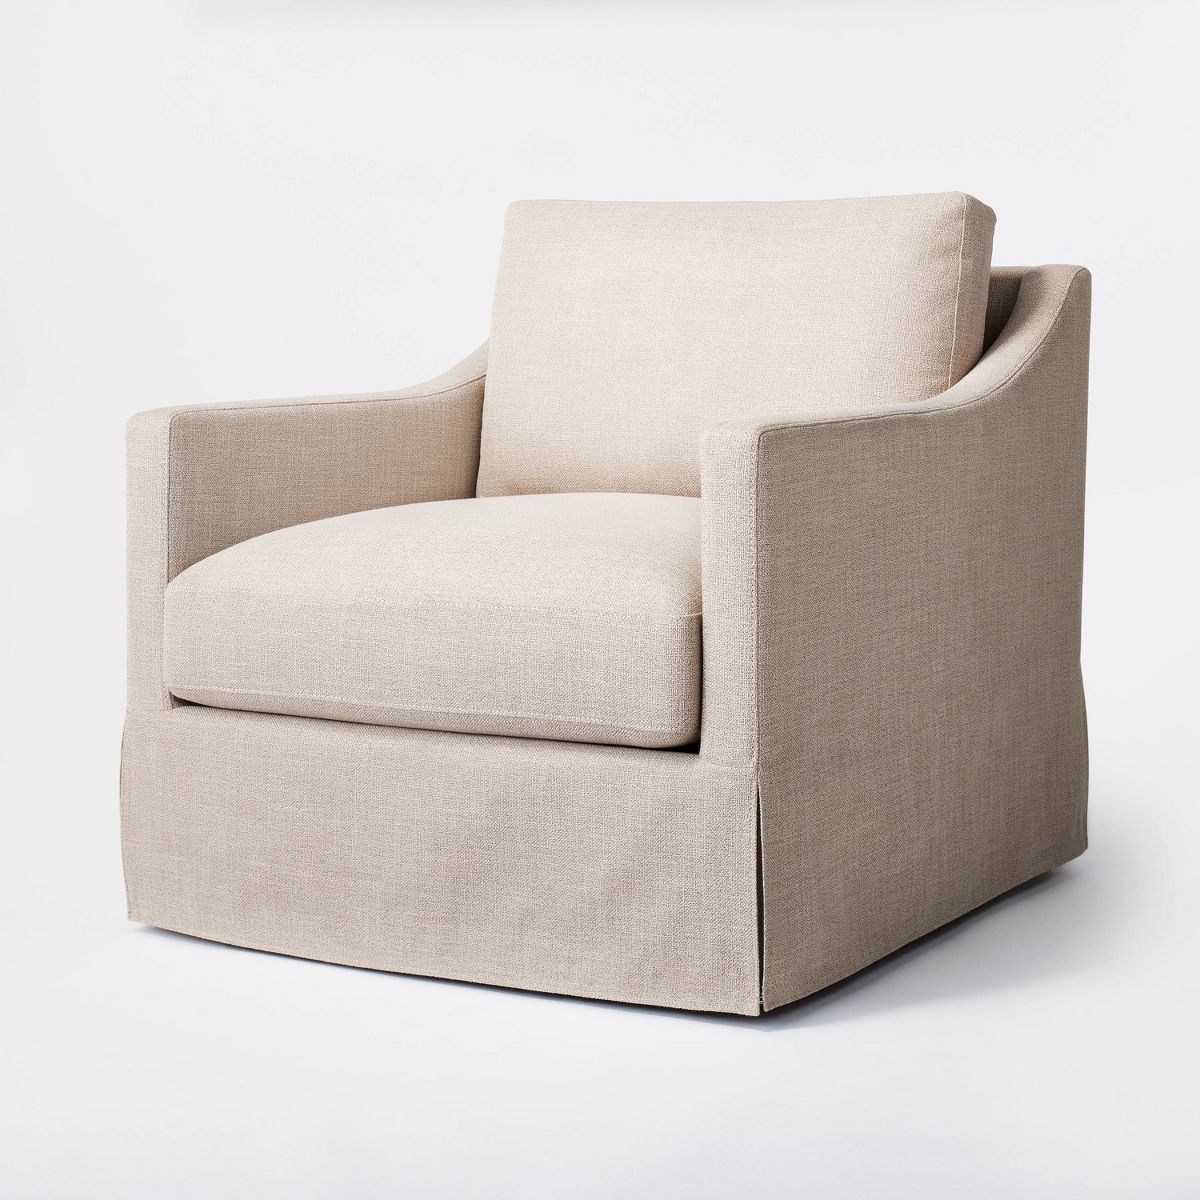 Vivian Park Upholstered Swivel Chair Mushroom Linen - Threshold™ designed with Studio McGee | Target